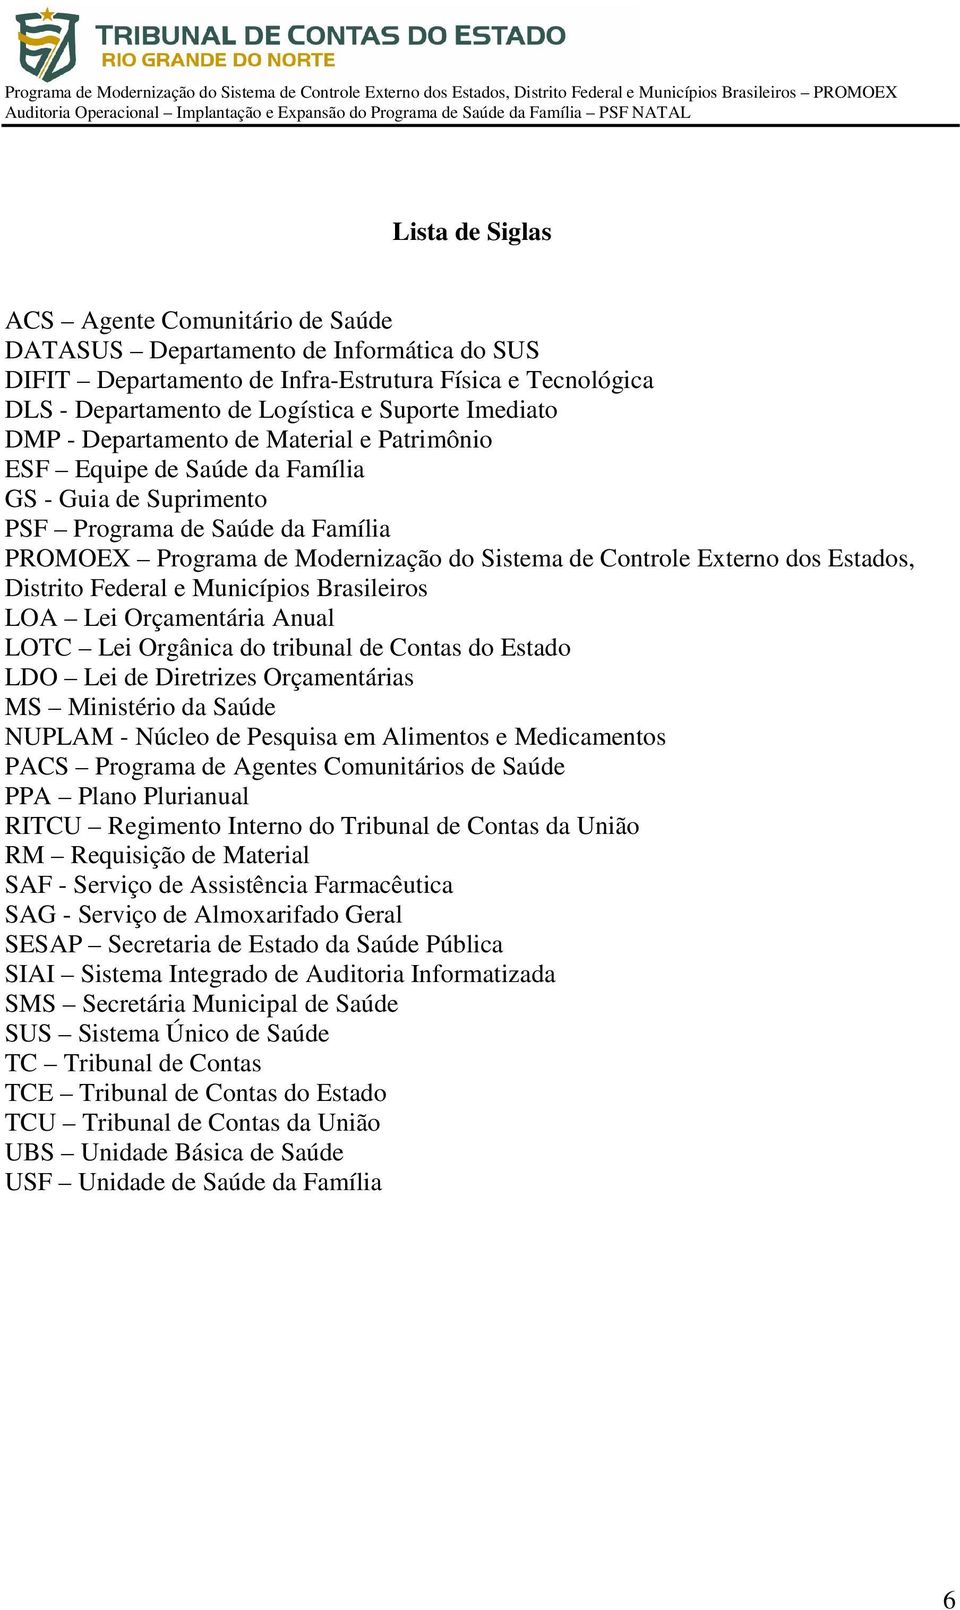 Externo dos Estados, Distrito Federal e Municípios Brasileiros LOA Lei Orçamentária Anual LOTC Lei Orgânica do tribunal de Contas do Estado LDO Lei de Diretrizes Orçamentárias MS Ministério da Saúde